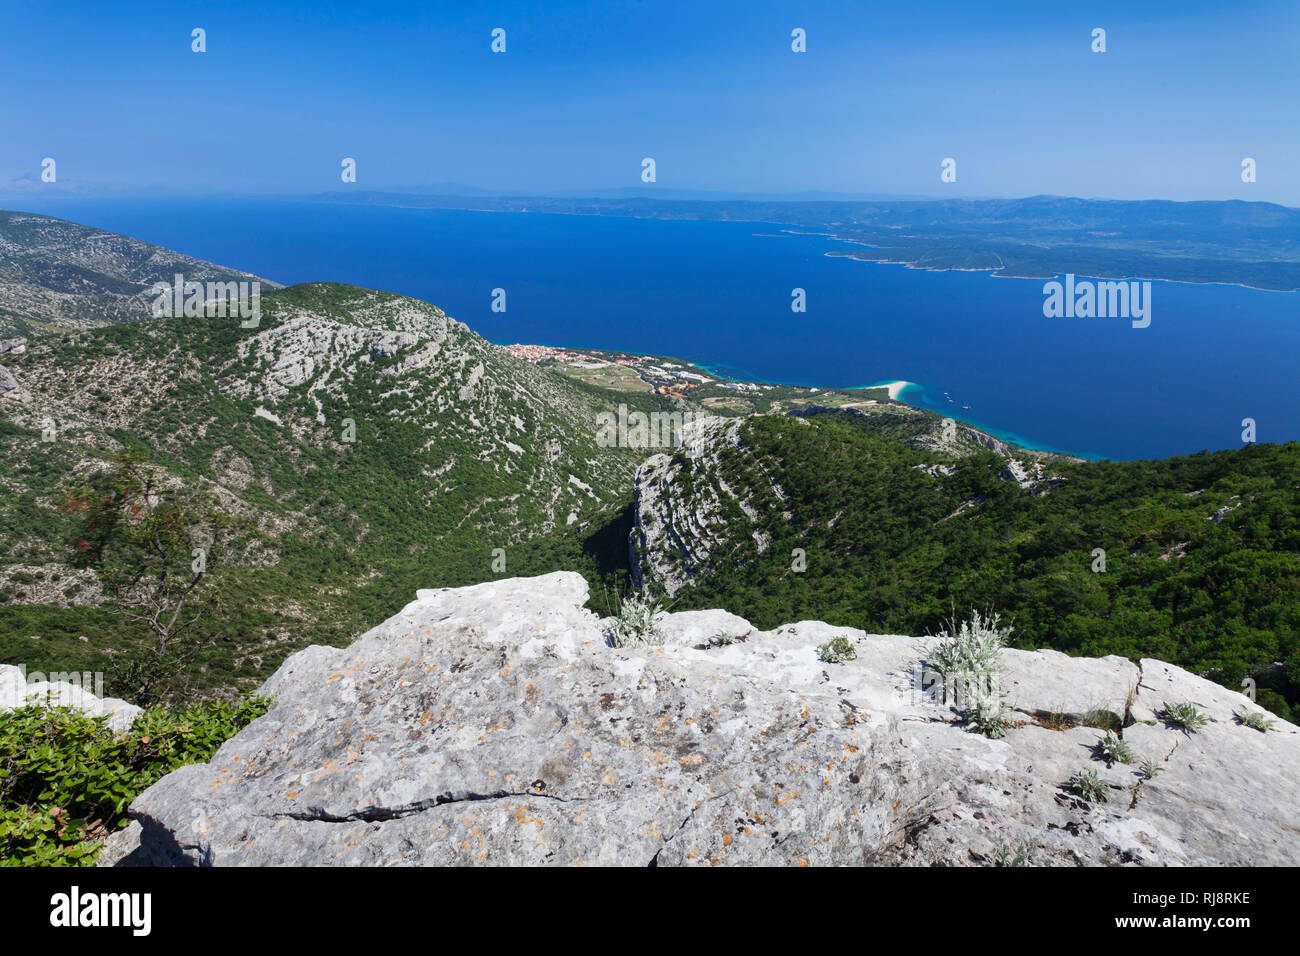 Blick vom Vidova Gora auf Bol, das Goldene Horn und die Insel Hvar, Insel Brac, Dalmatien, Kroatien Foto Stock